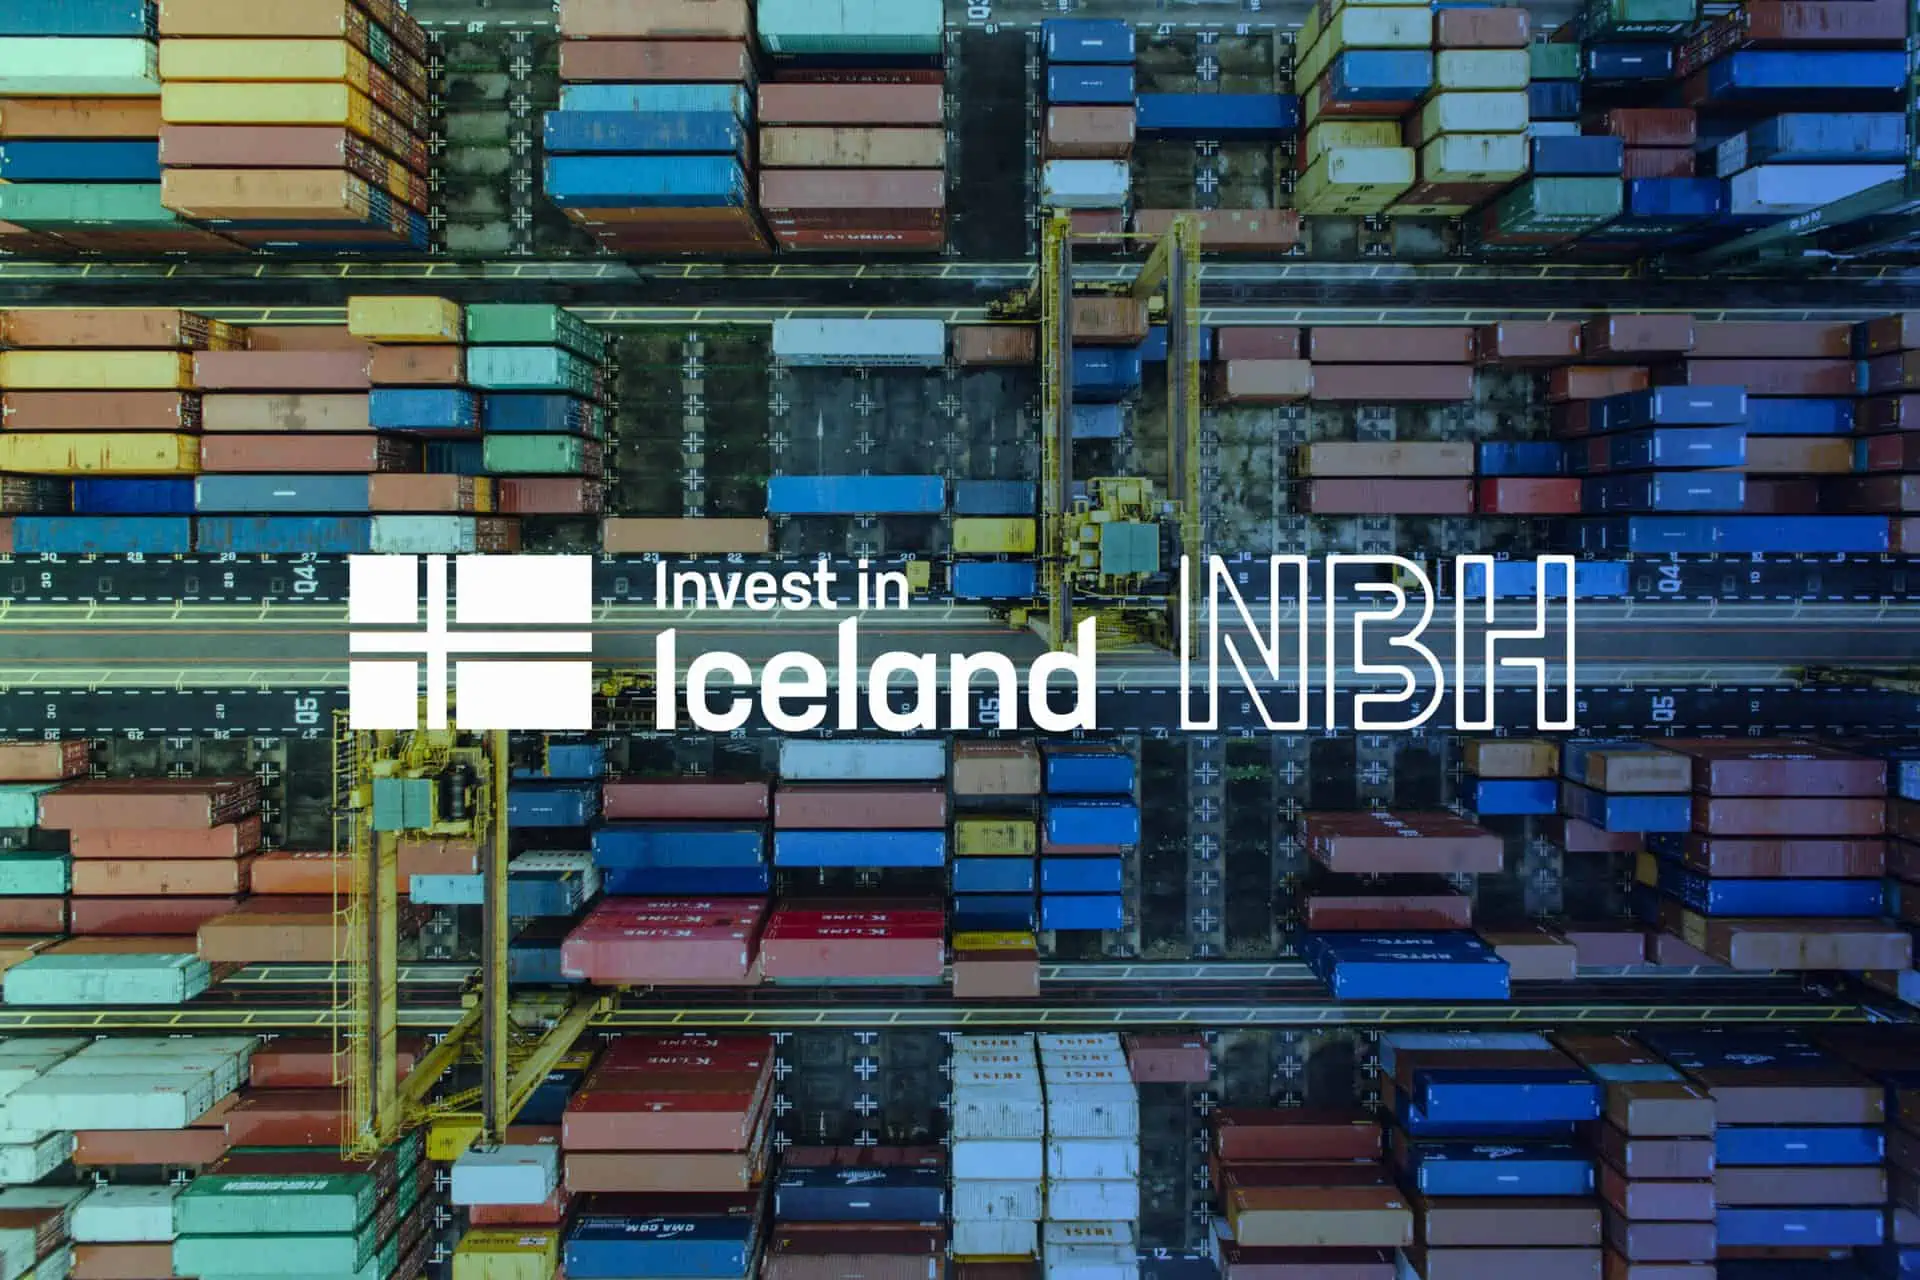 促进冰岛发展组织扩大与 NBH 在投资冰岛方面的合作伙伴关系